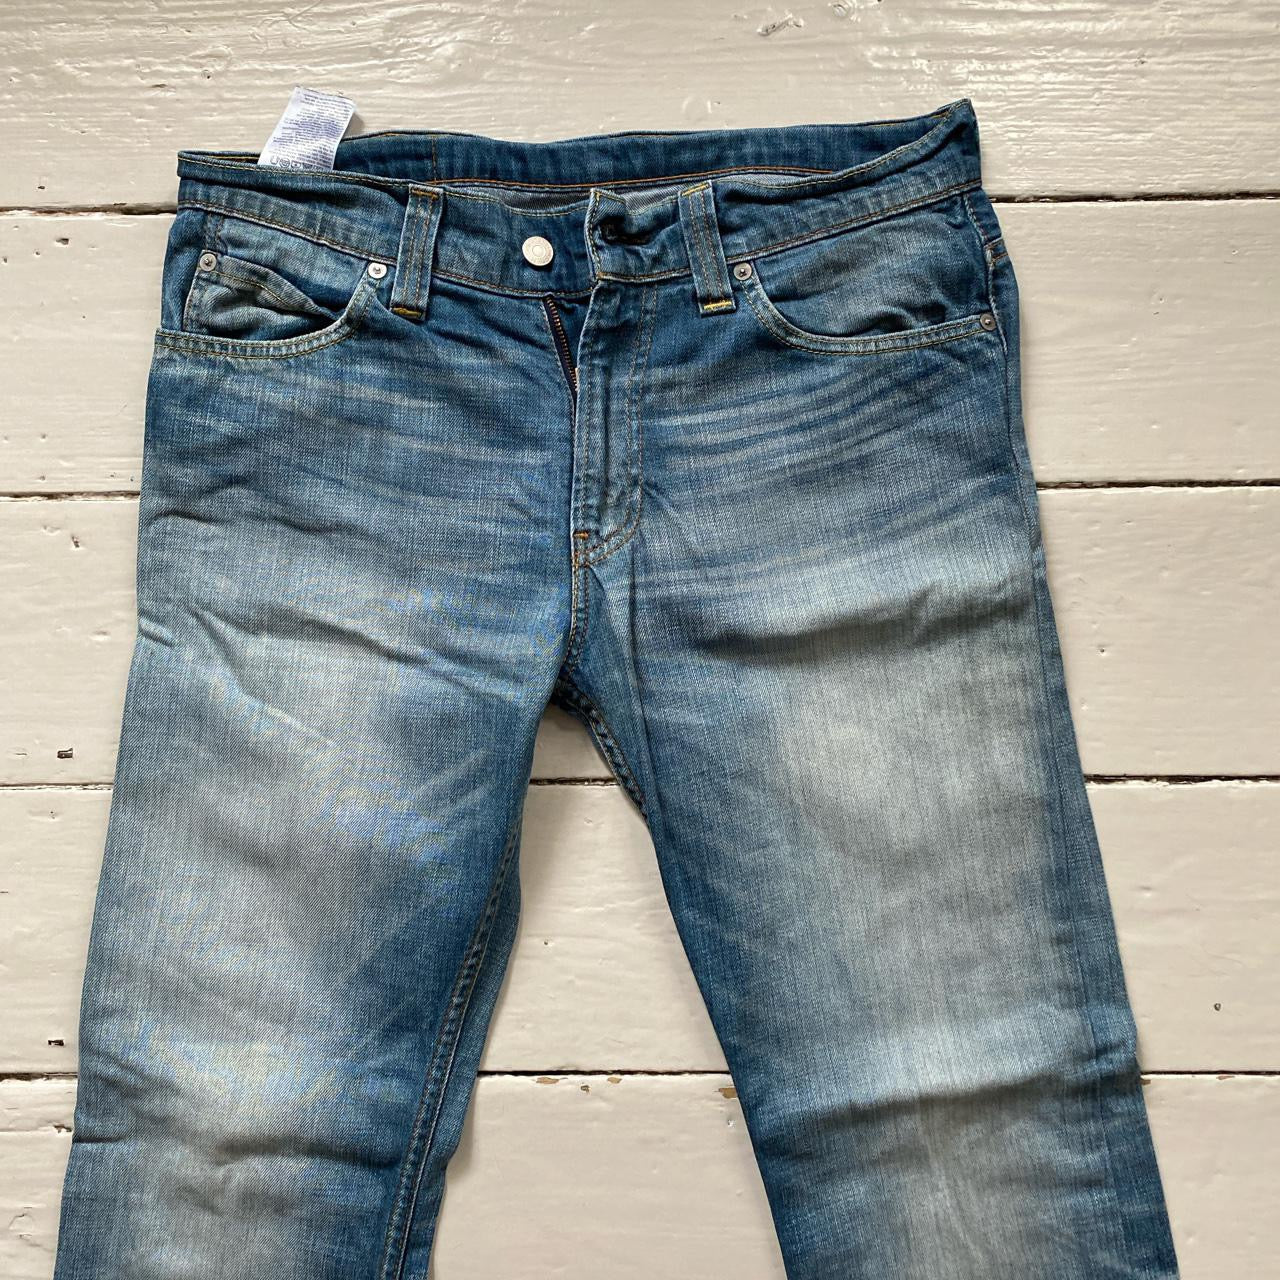 Levis 506 Light Wash Jeans (32/28)